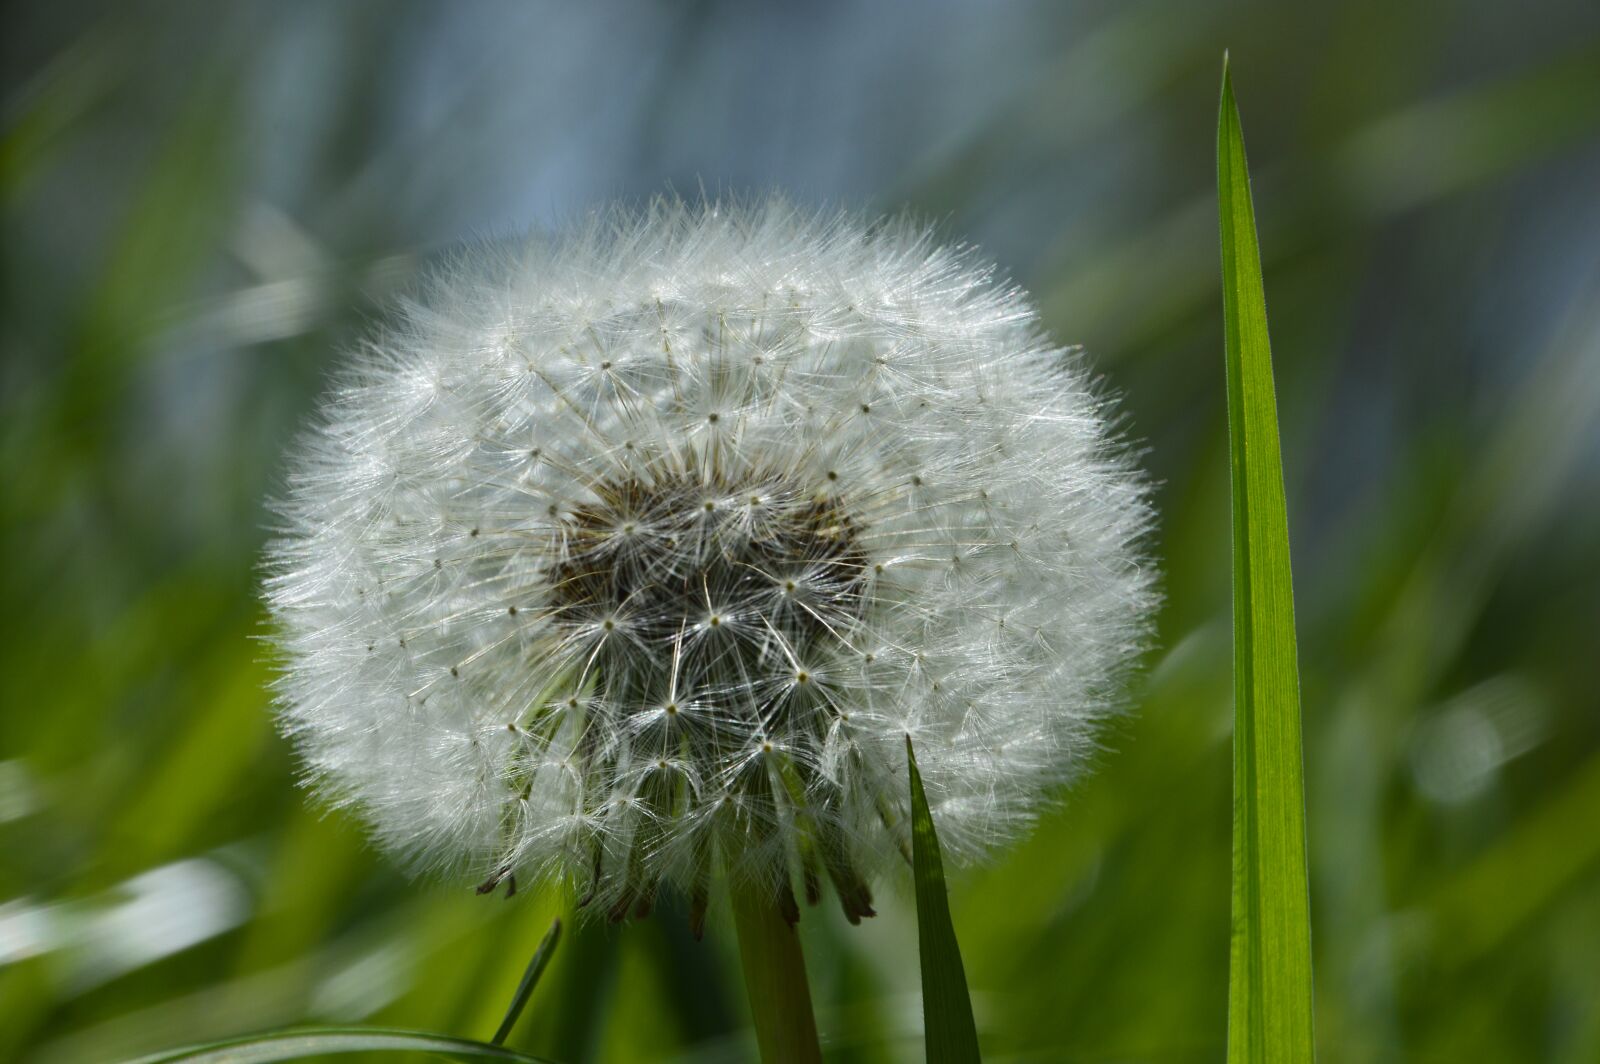 Nikon D3200 sample photo. Dandelion, nature, plant photography